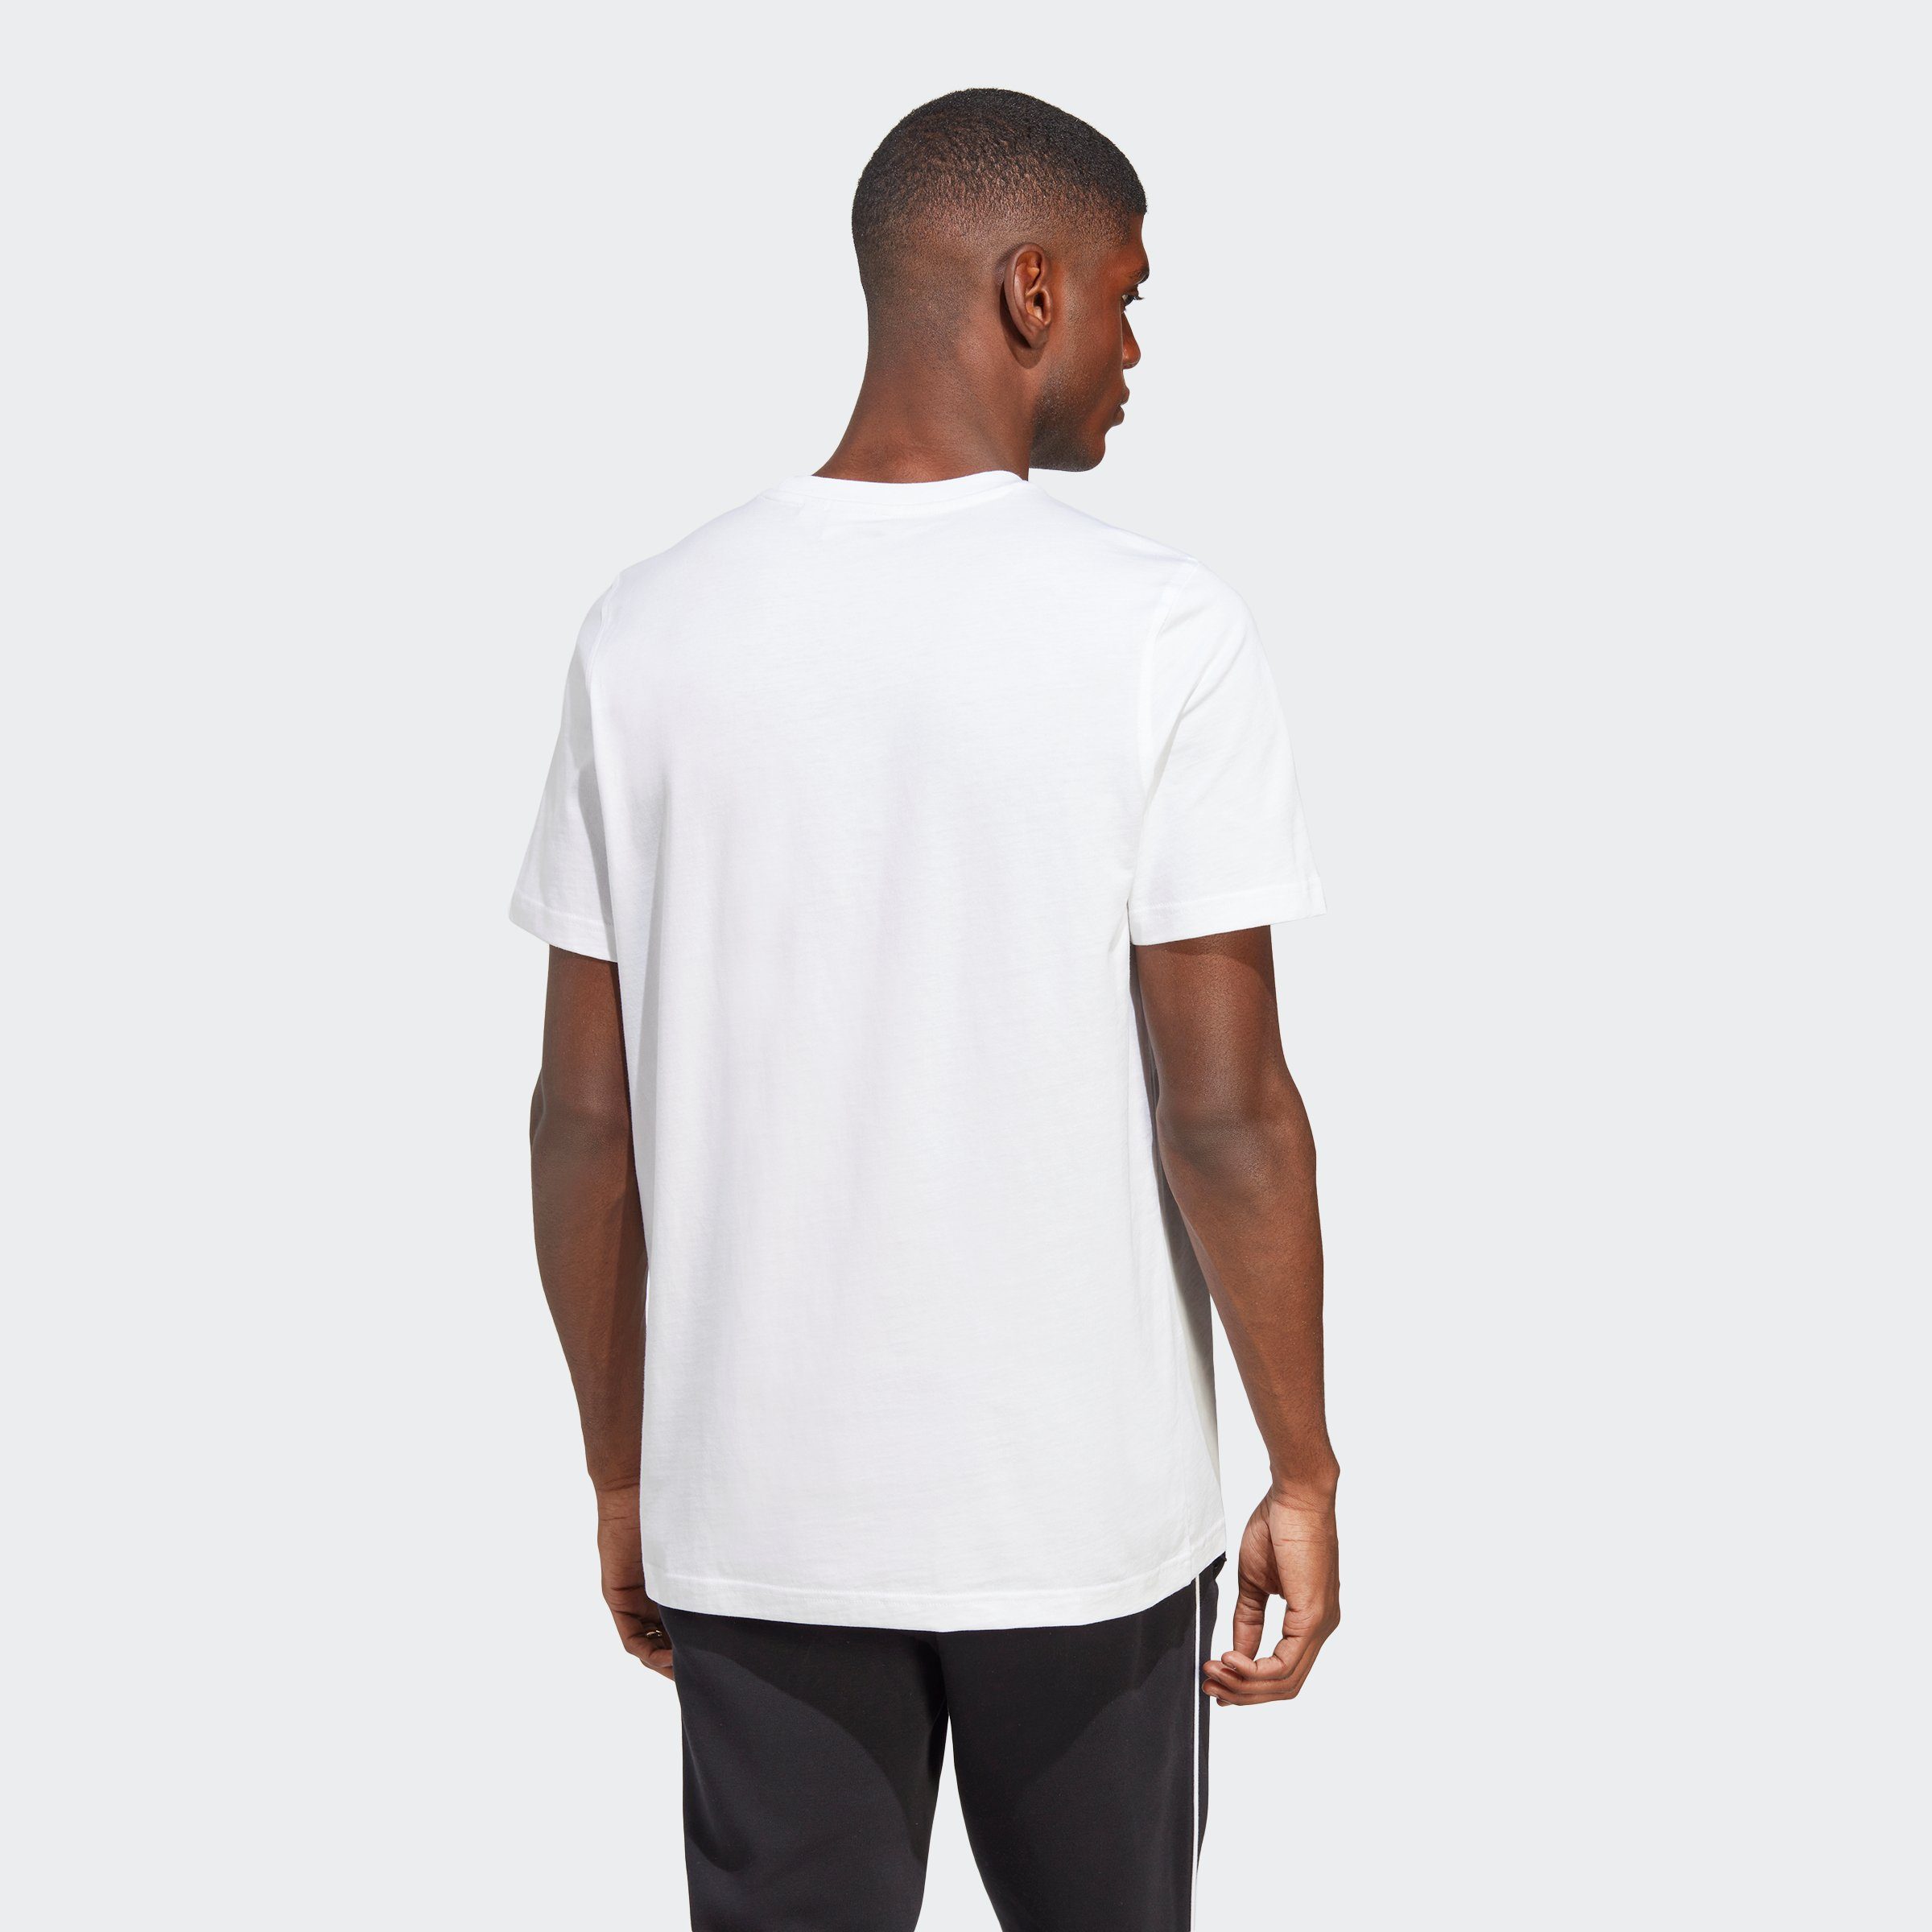 adidas Originals TREFOIL CLASSICS Black / White T-Shirt ADICOLOR